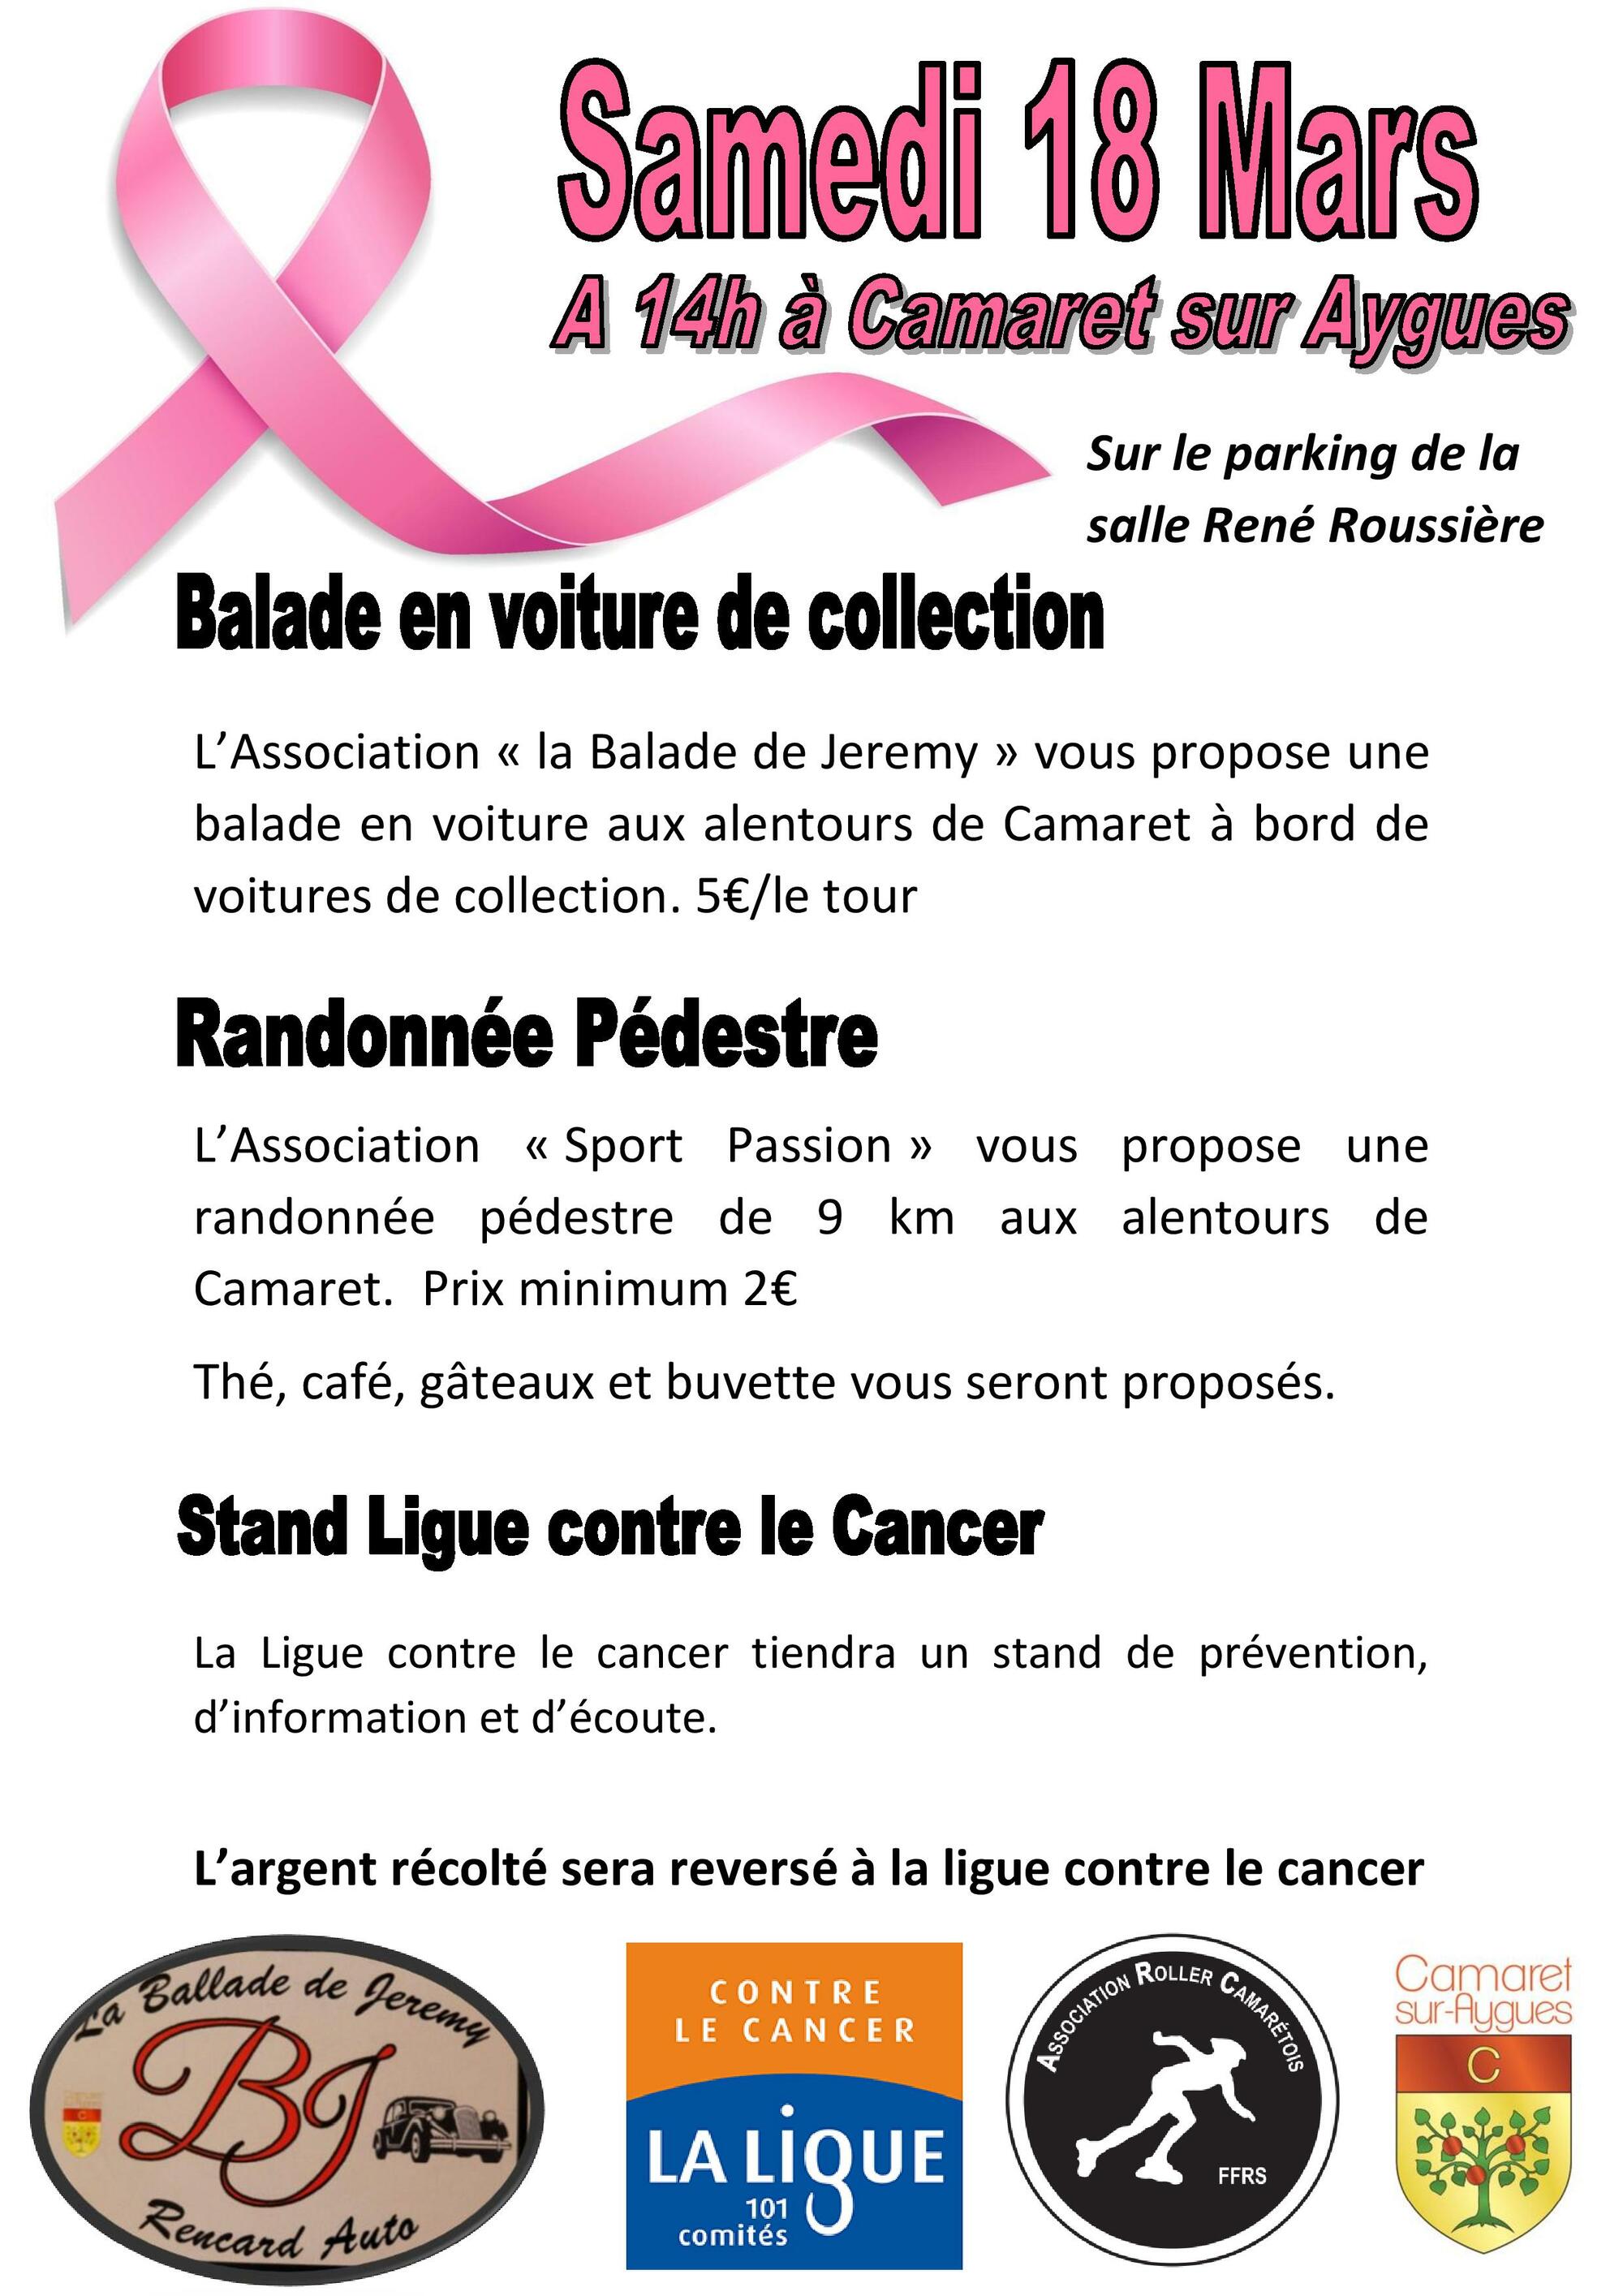 De nombreux événements organisés par la Ligue contre le cancer et l'Association Roller Camarétois le samedi 18 mars à partir de 14h00 sur le parking de la salle René Roussière